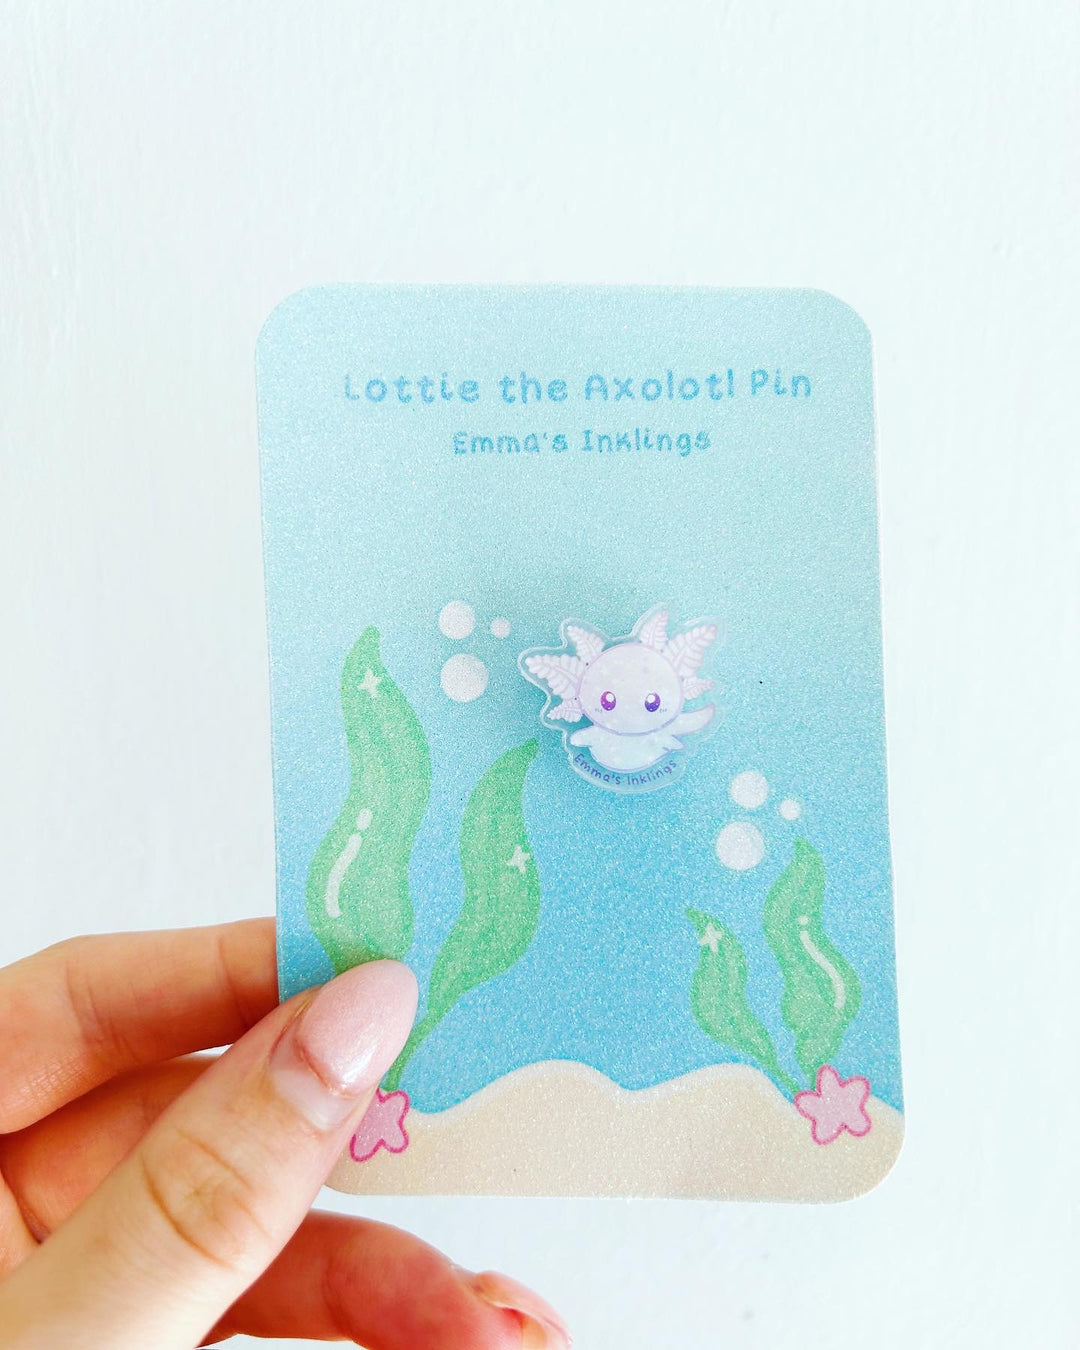 Lottie the Axolotl Pin